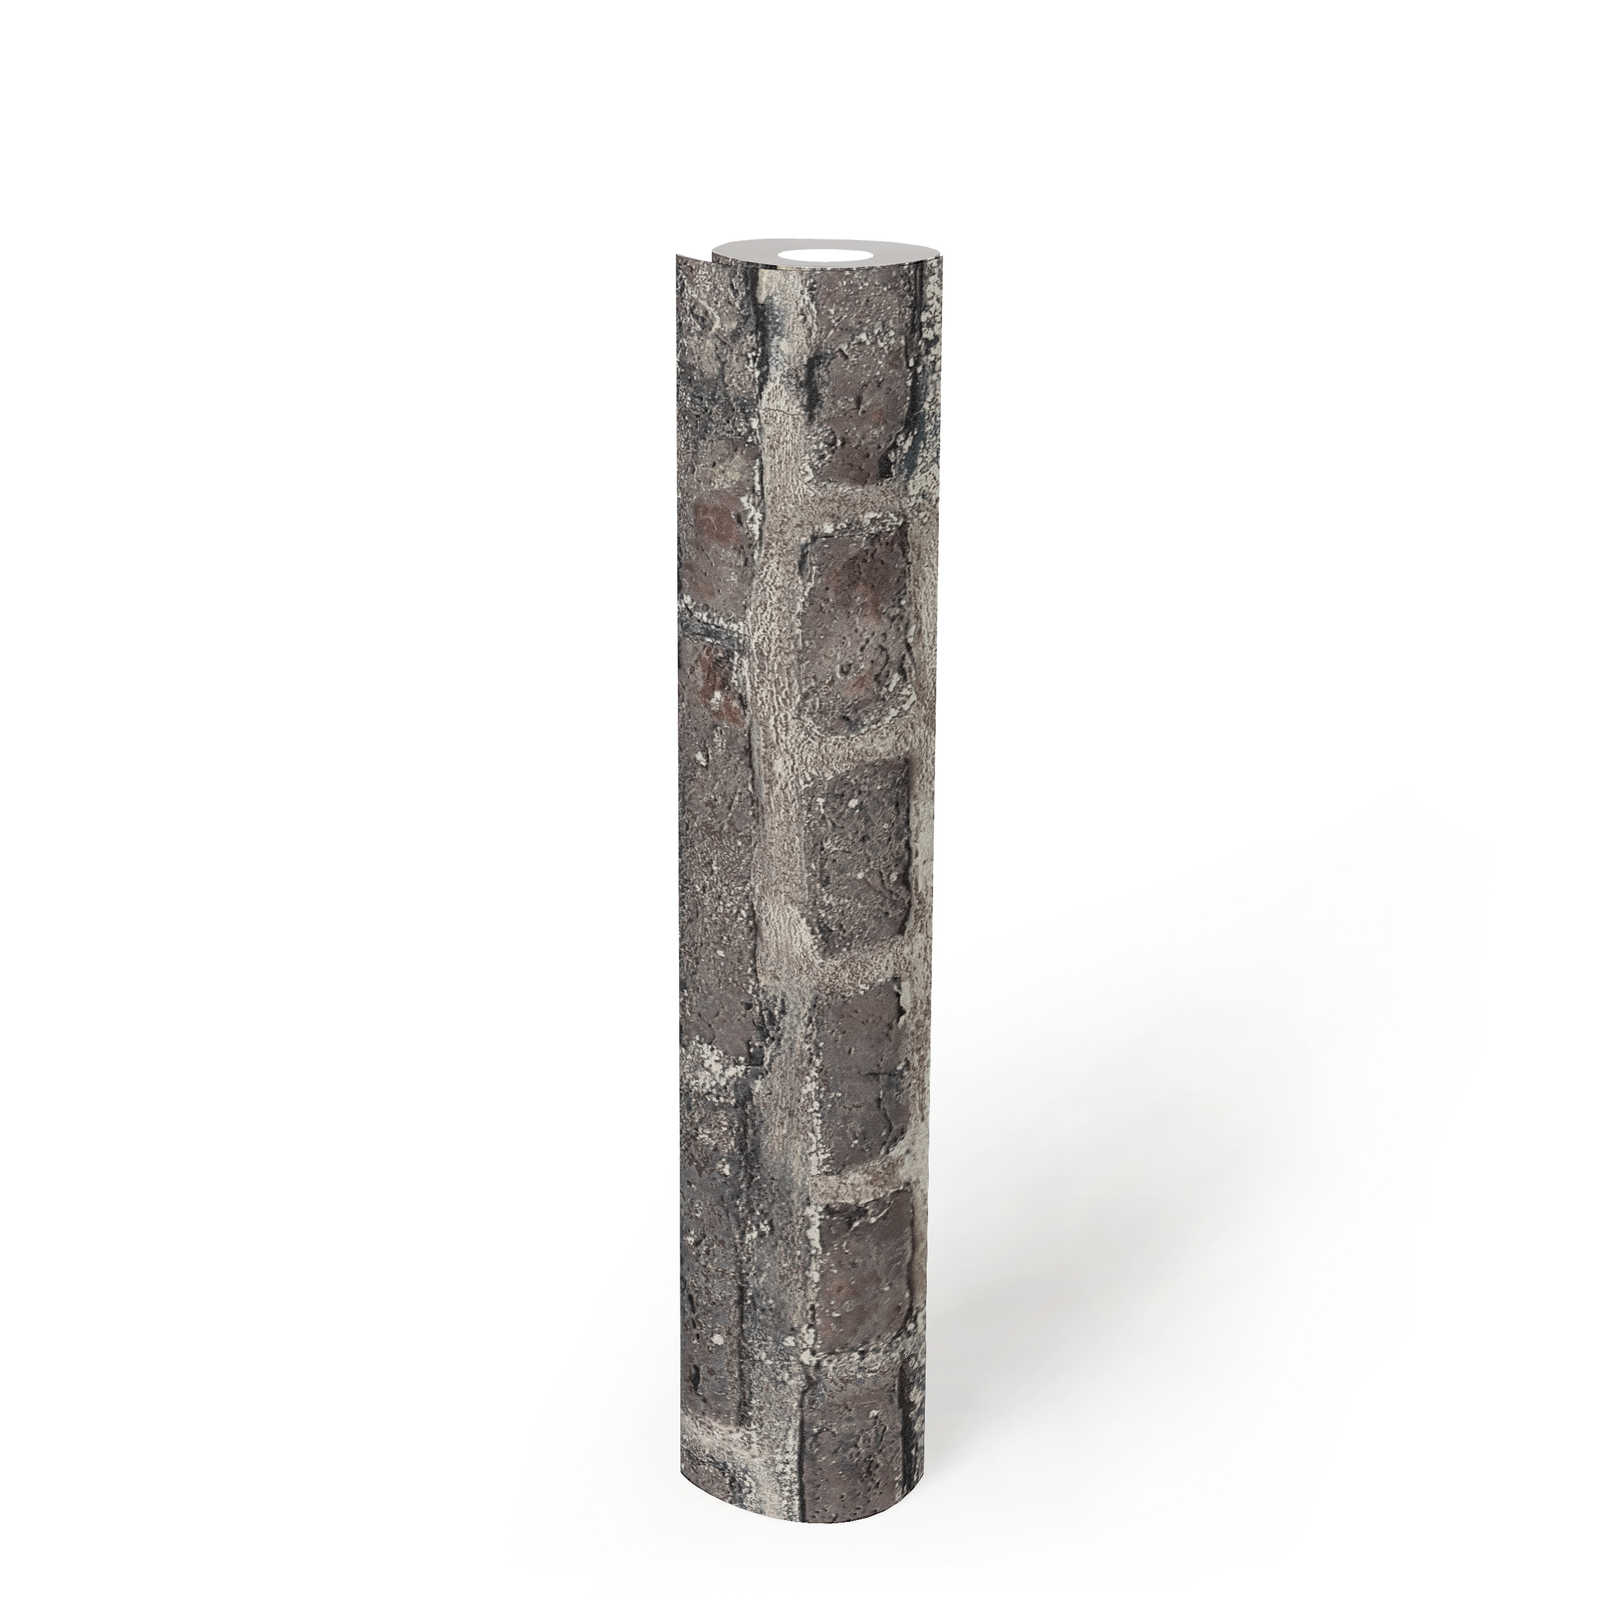             Carta da parati effetto pietra con mattoni, mattoni - grigio, nero
        